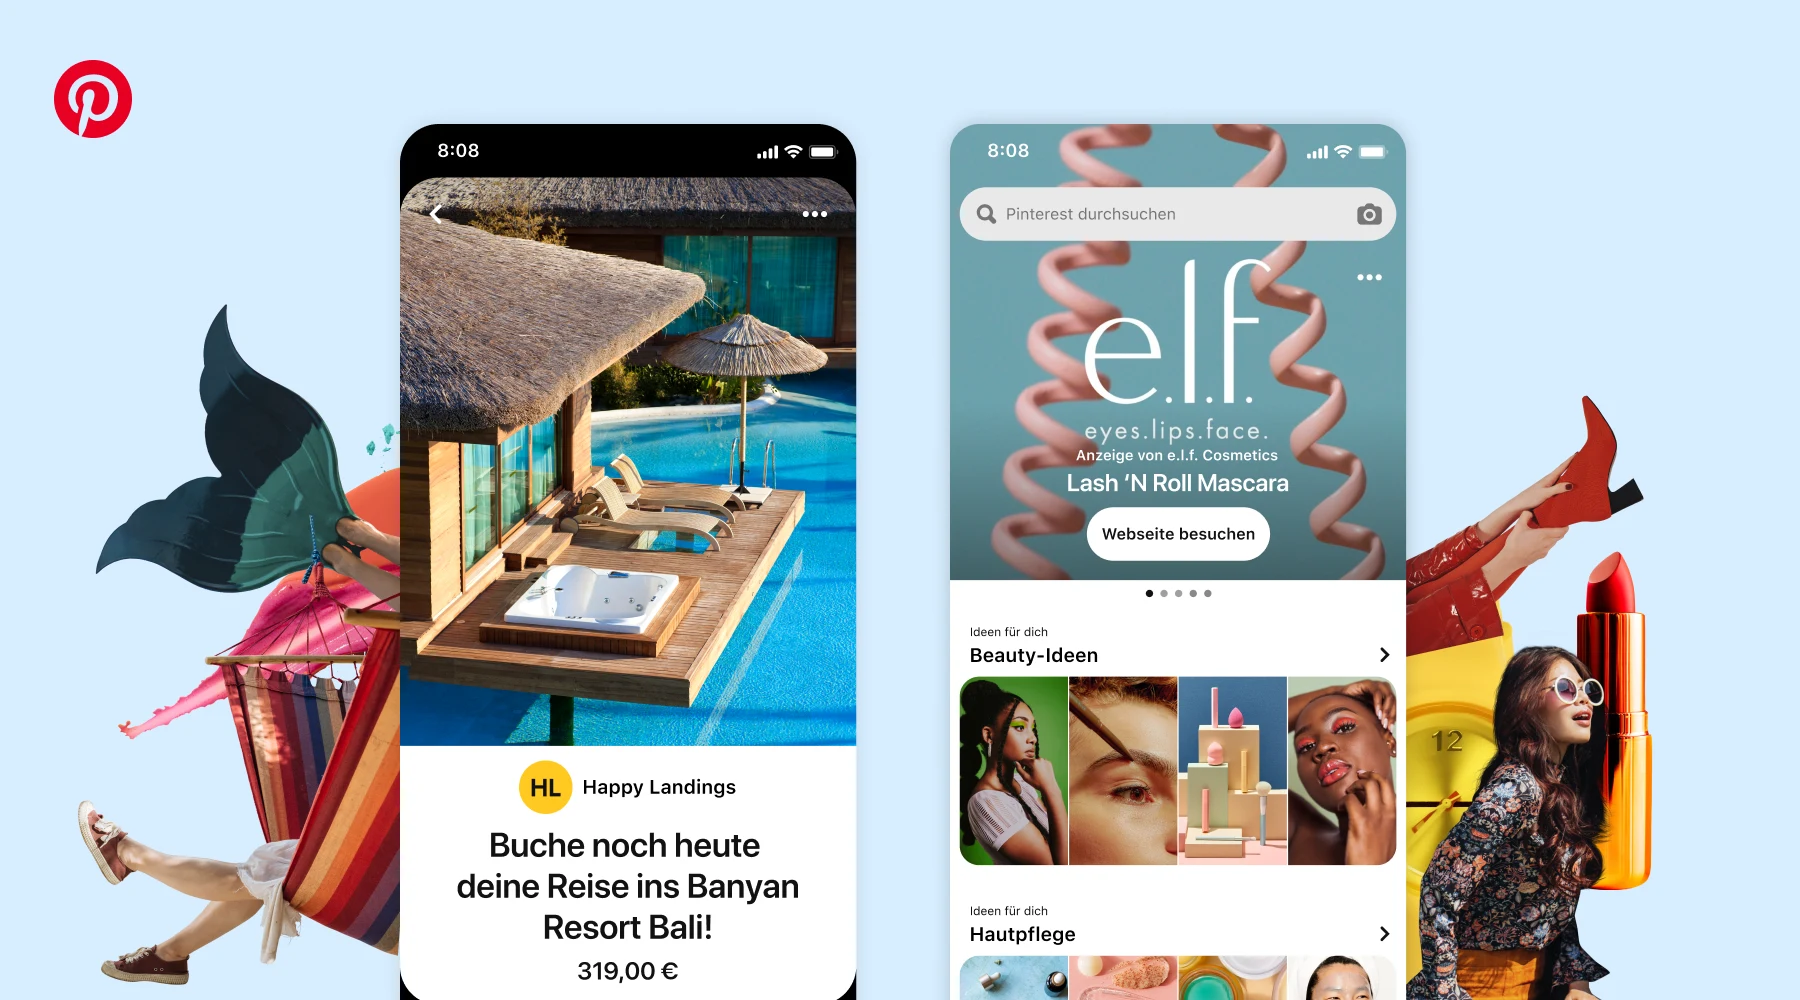  Screenshots von den Pinterest-Funktionen Premiere Spotlight und Reisekatalog vor einem blauen Hintergrund